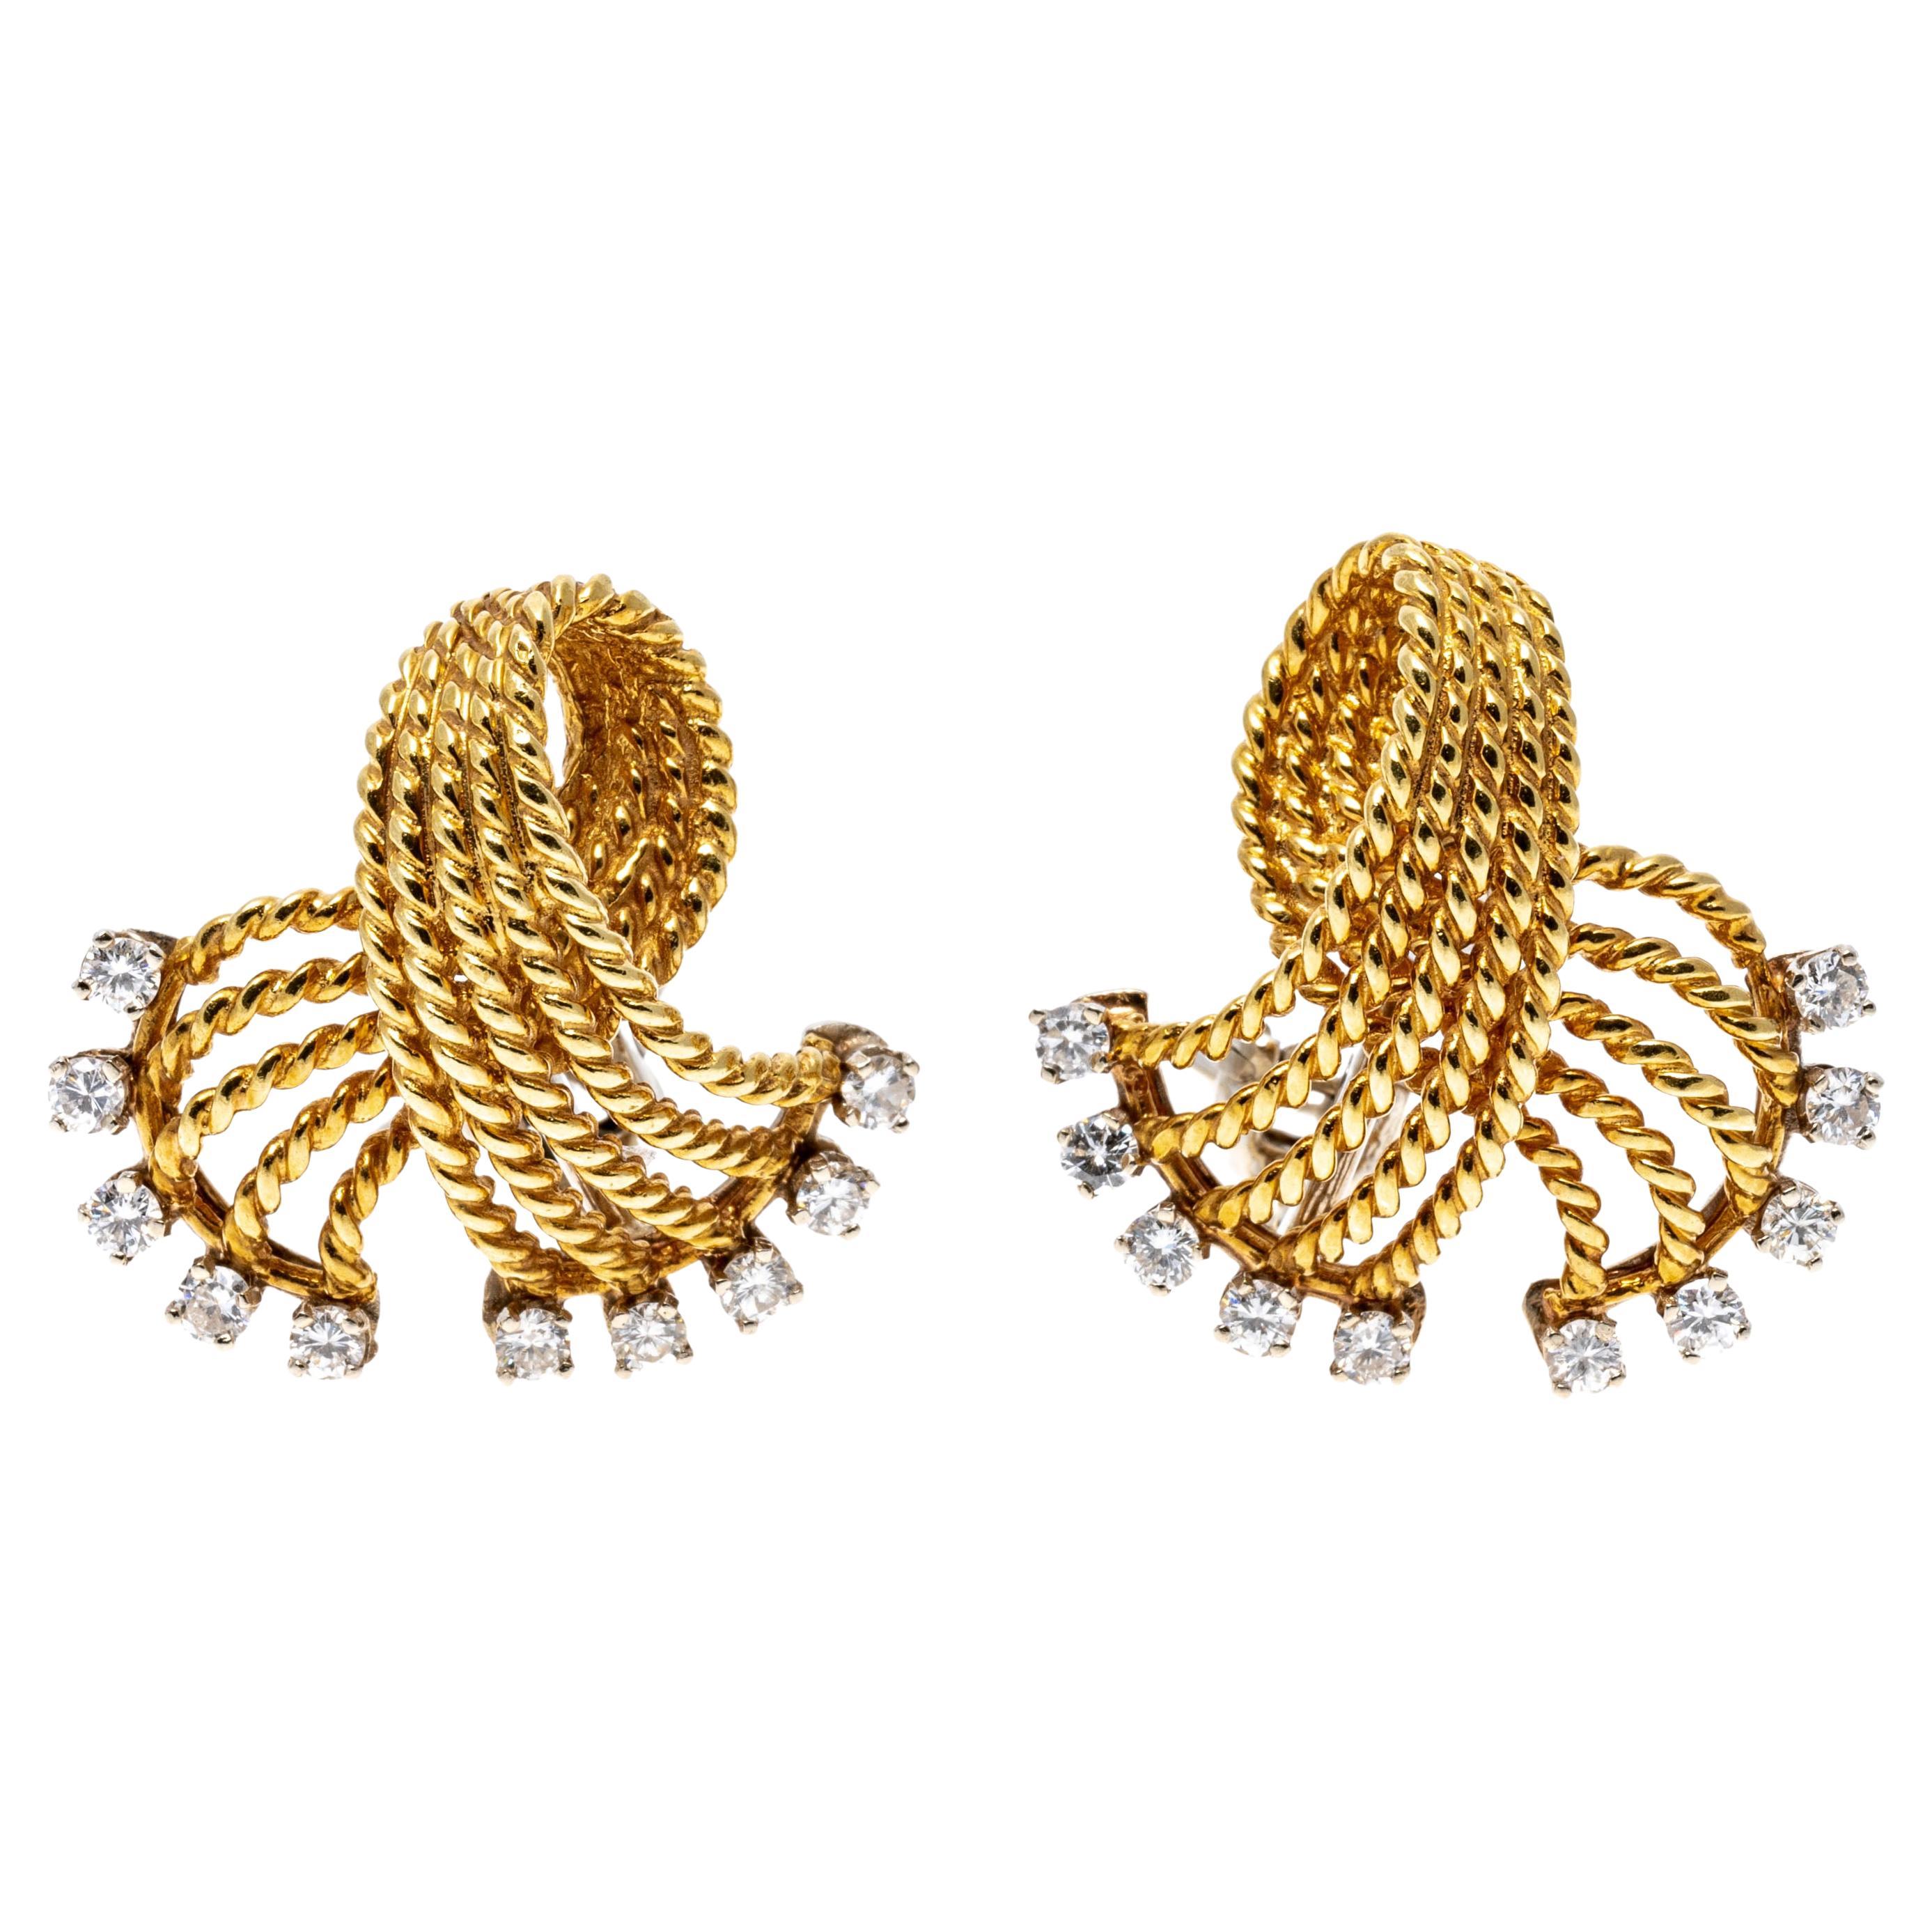 Boucles d'oreilles en or jaune 18 carats tressées à nœuds pliés avec diamants, environ 0,50 carat